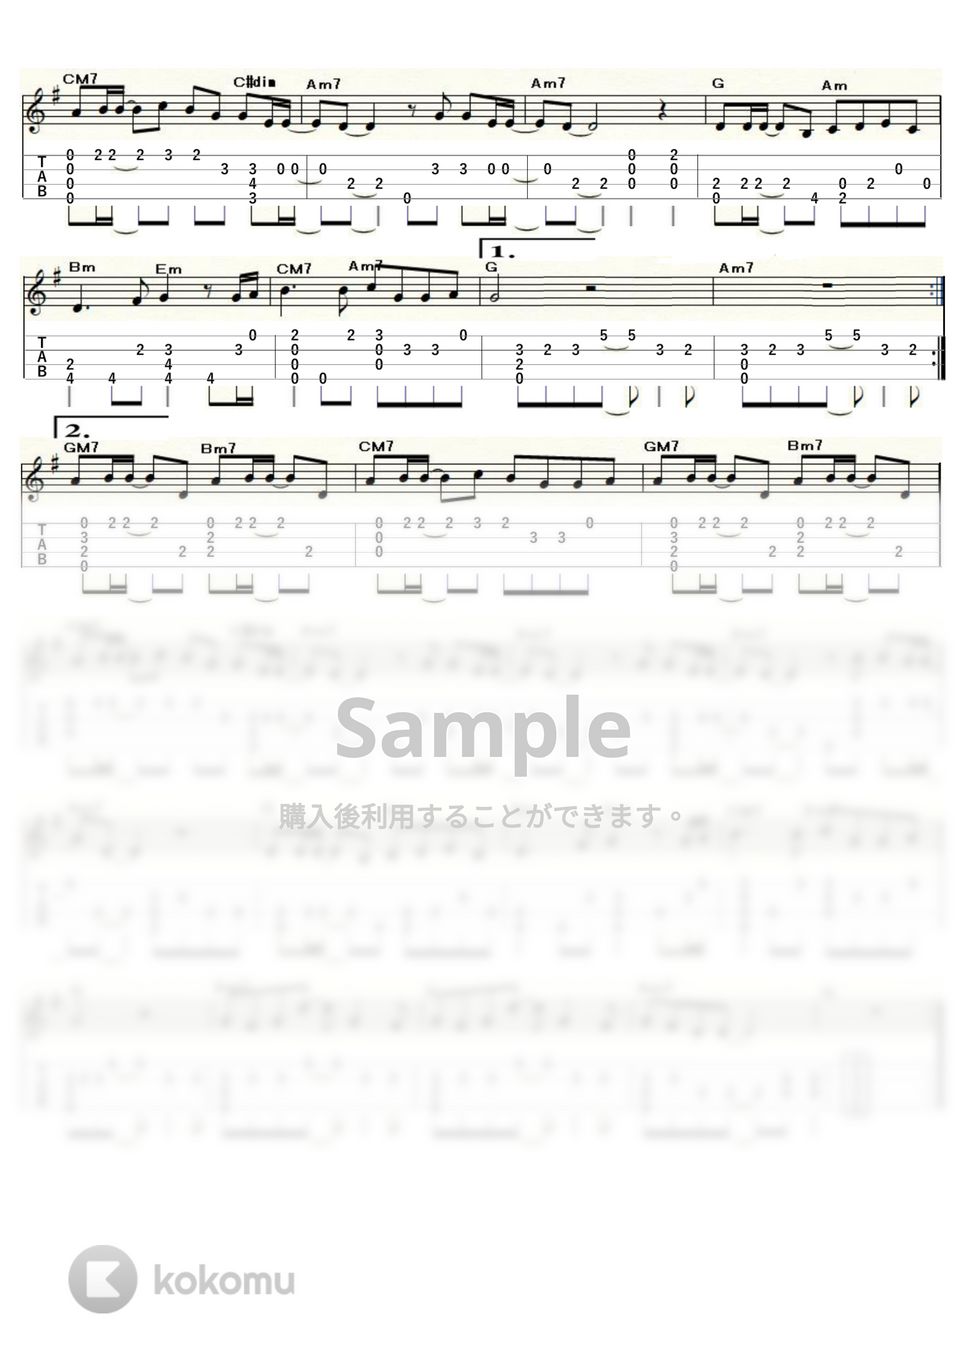 松田聖子 - 赤いスイートピー (ｳｸﾚﾚｿﾛ / Low-G / 中級) by ukulelepapa